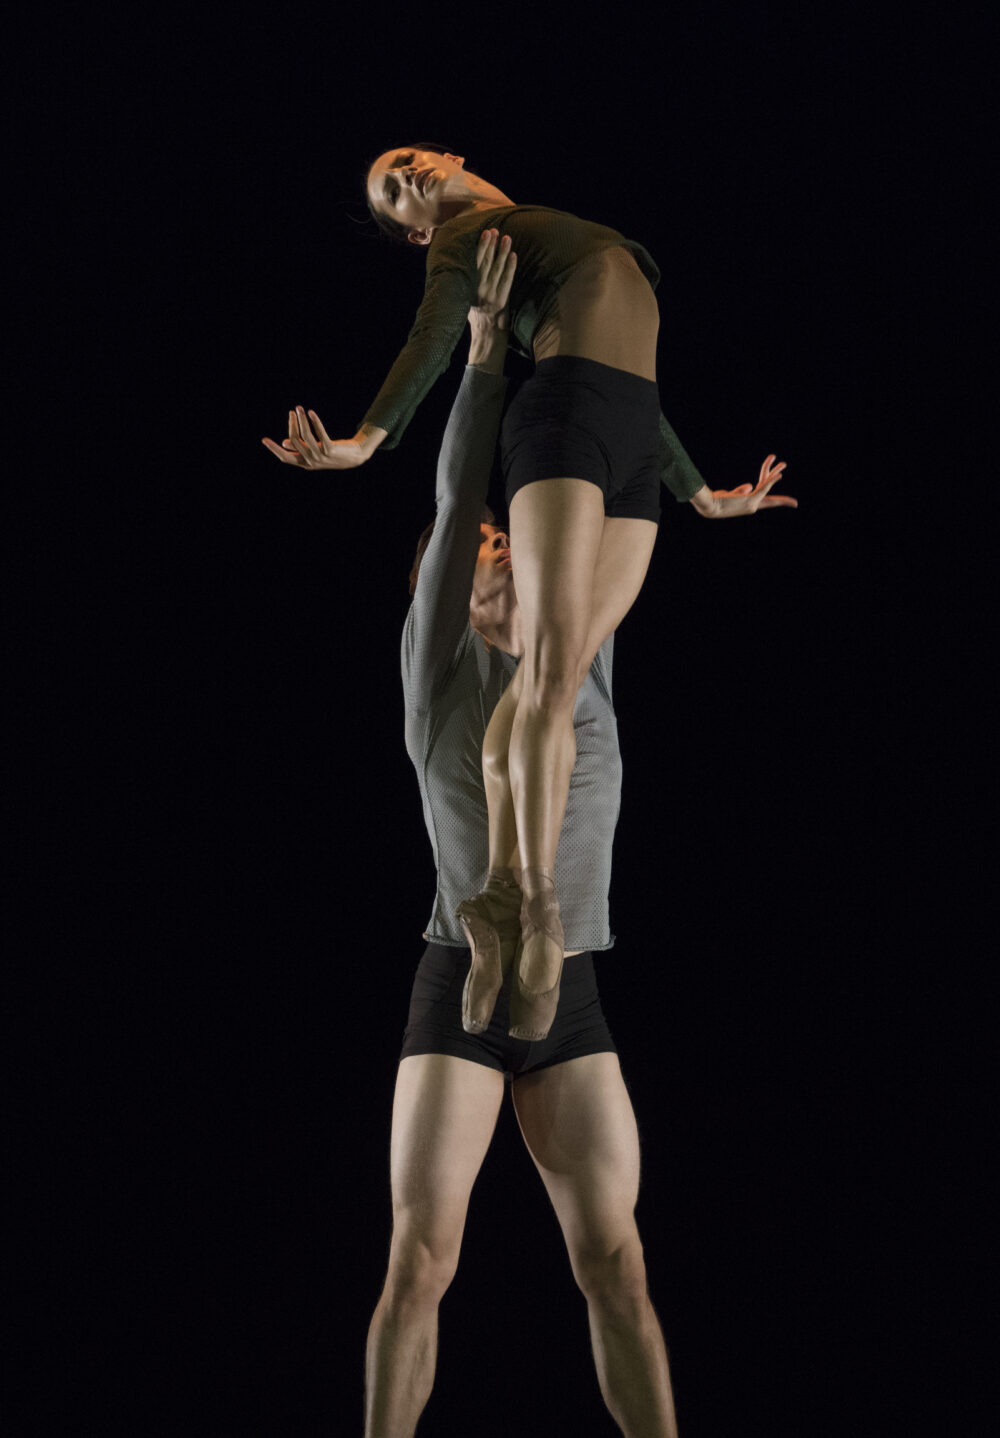 rancesca Hayward - The Royal Ballet | Calvin Richardson - The Royal Ballet | A duet from Borderlands | Choreography - Wayne McGregor | Photo © Ravi Deepres/Alicia Clarke}